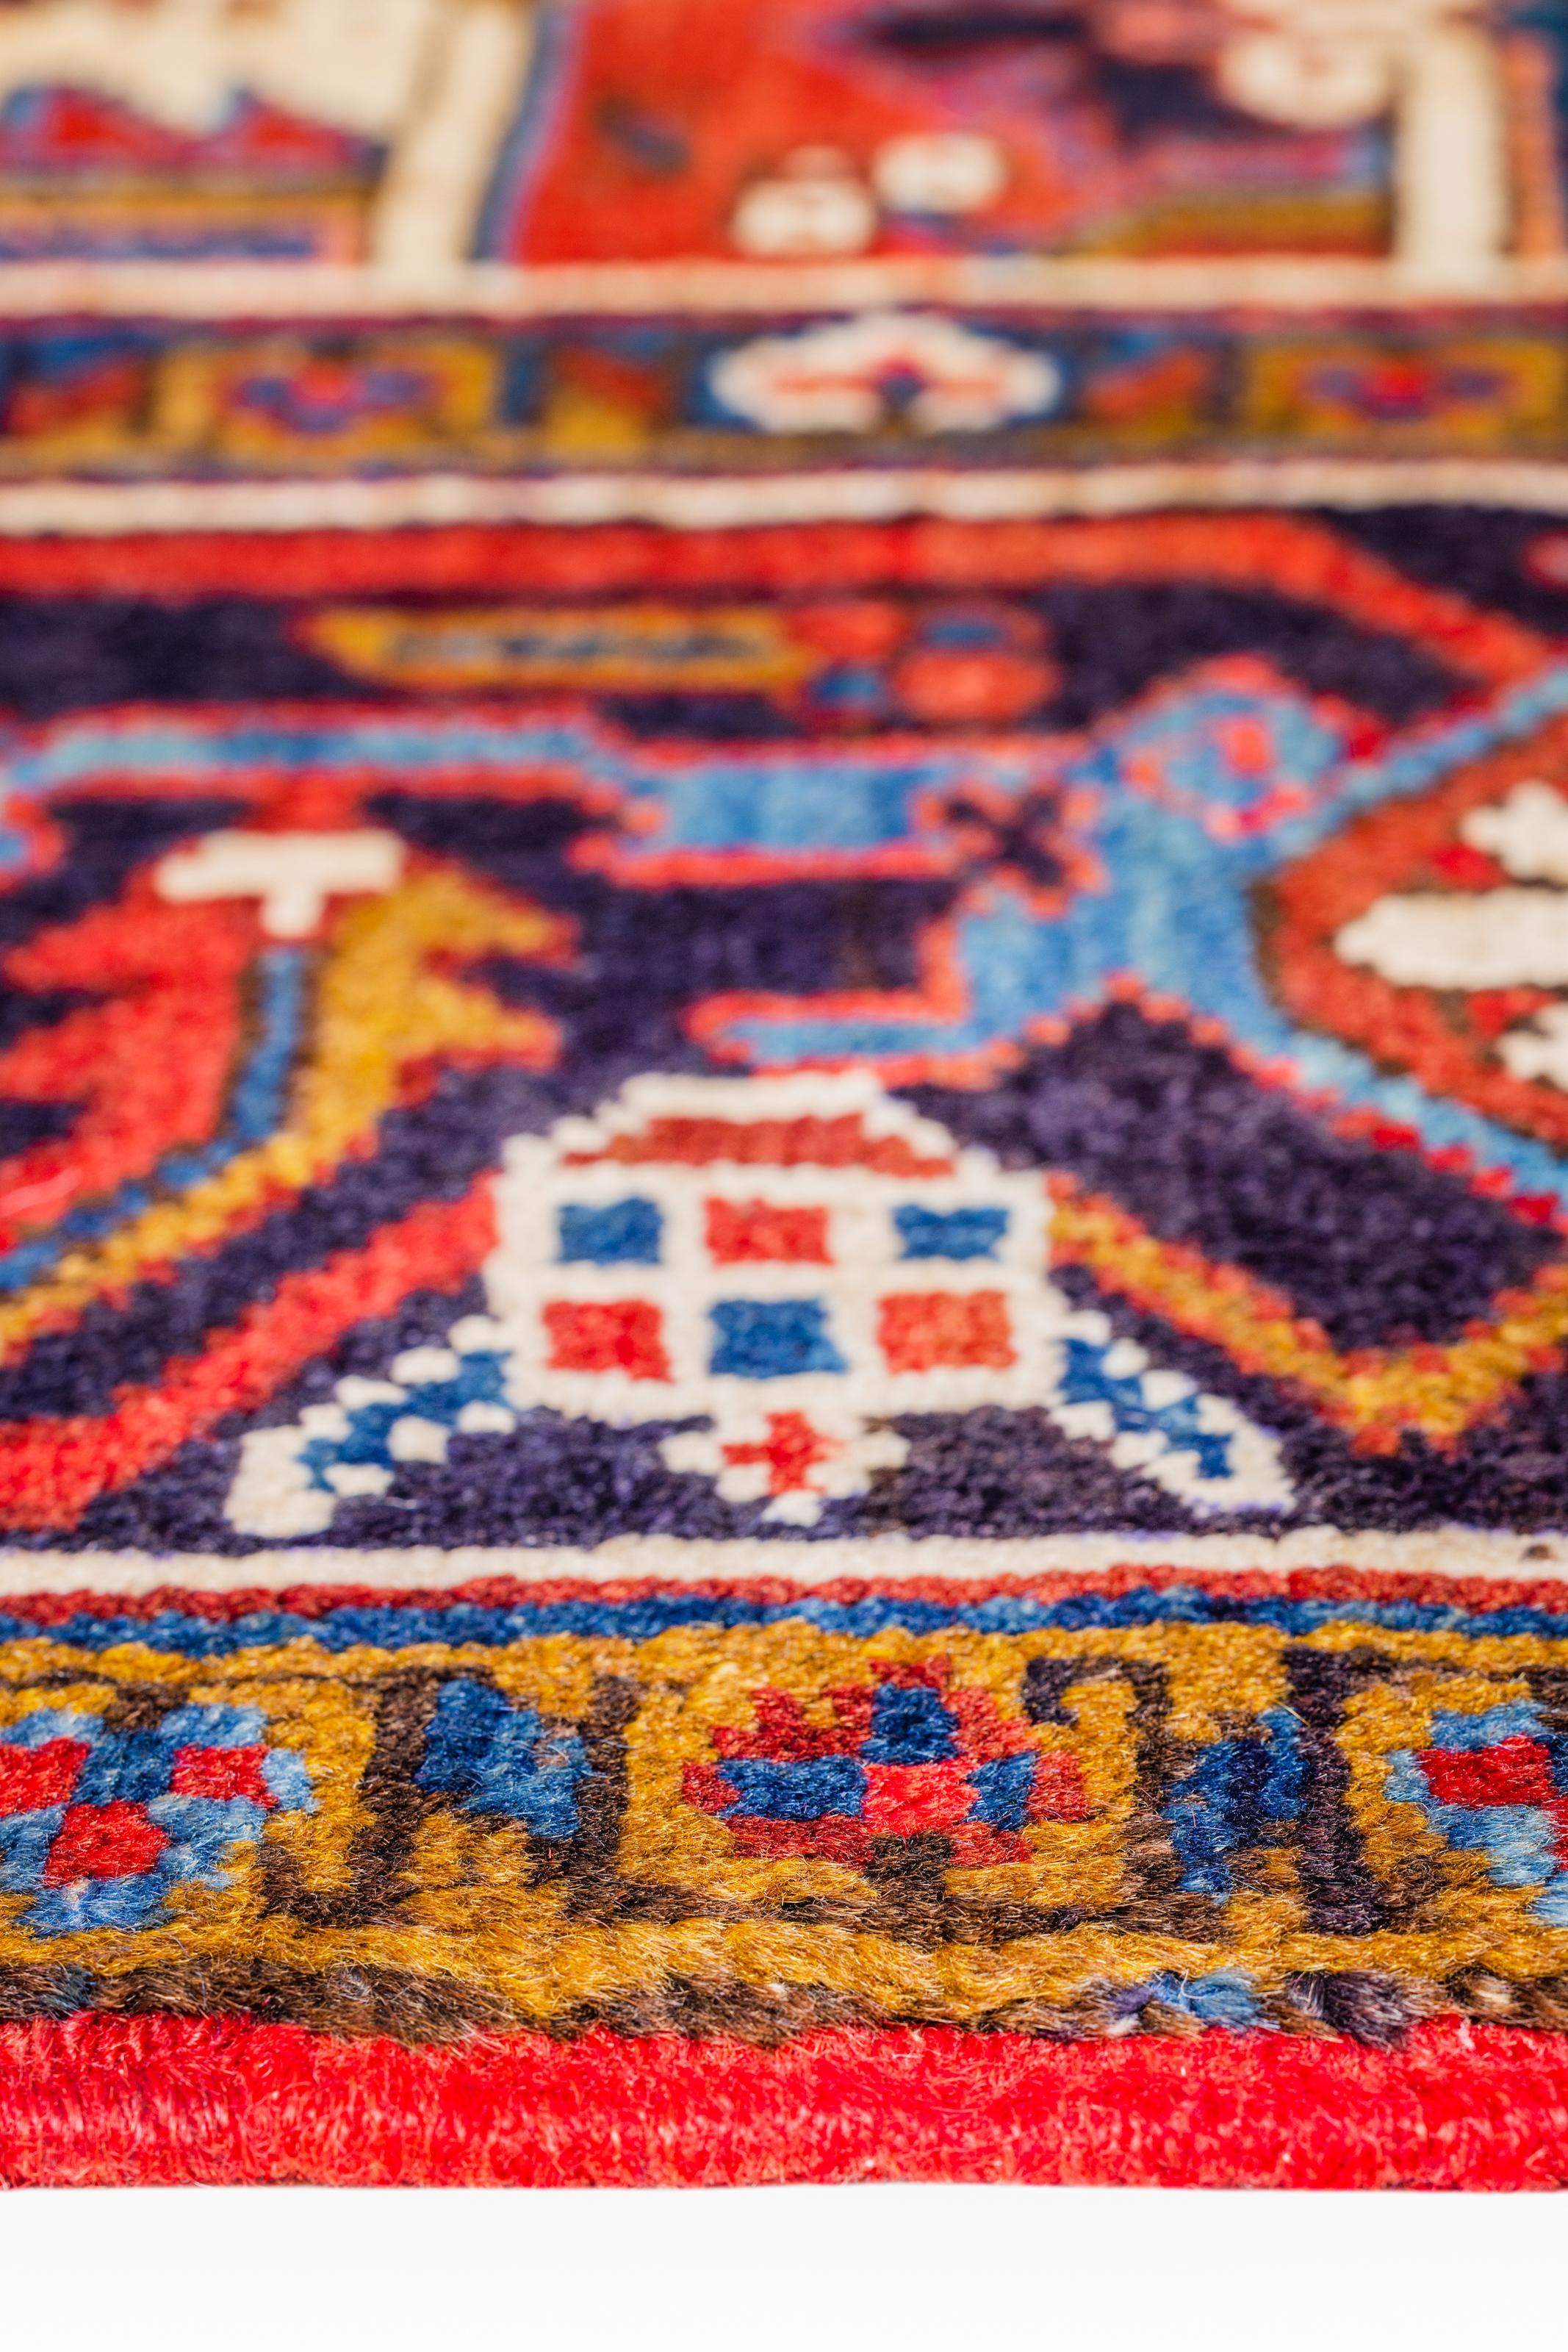 Réputés pour la richesse de leurs couleurs et l'intérêt de leurs motifs, les tapis persans sont fabriqués avec des laines et des soies entièrement naturelles. Leur beauté et l'impact qu'ils auront sur une maison sont infinis.

Dimensions exactes :